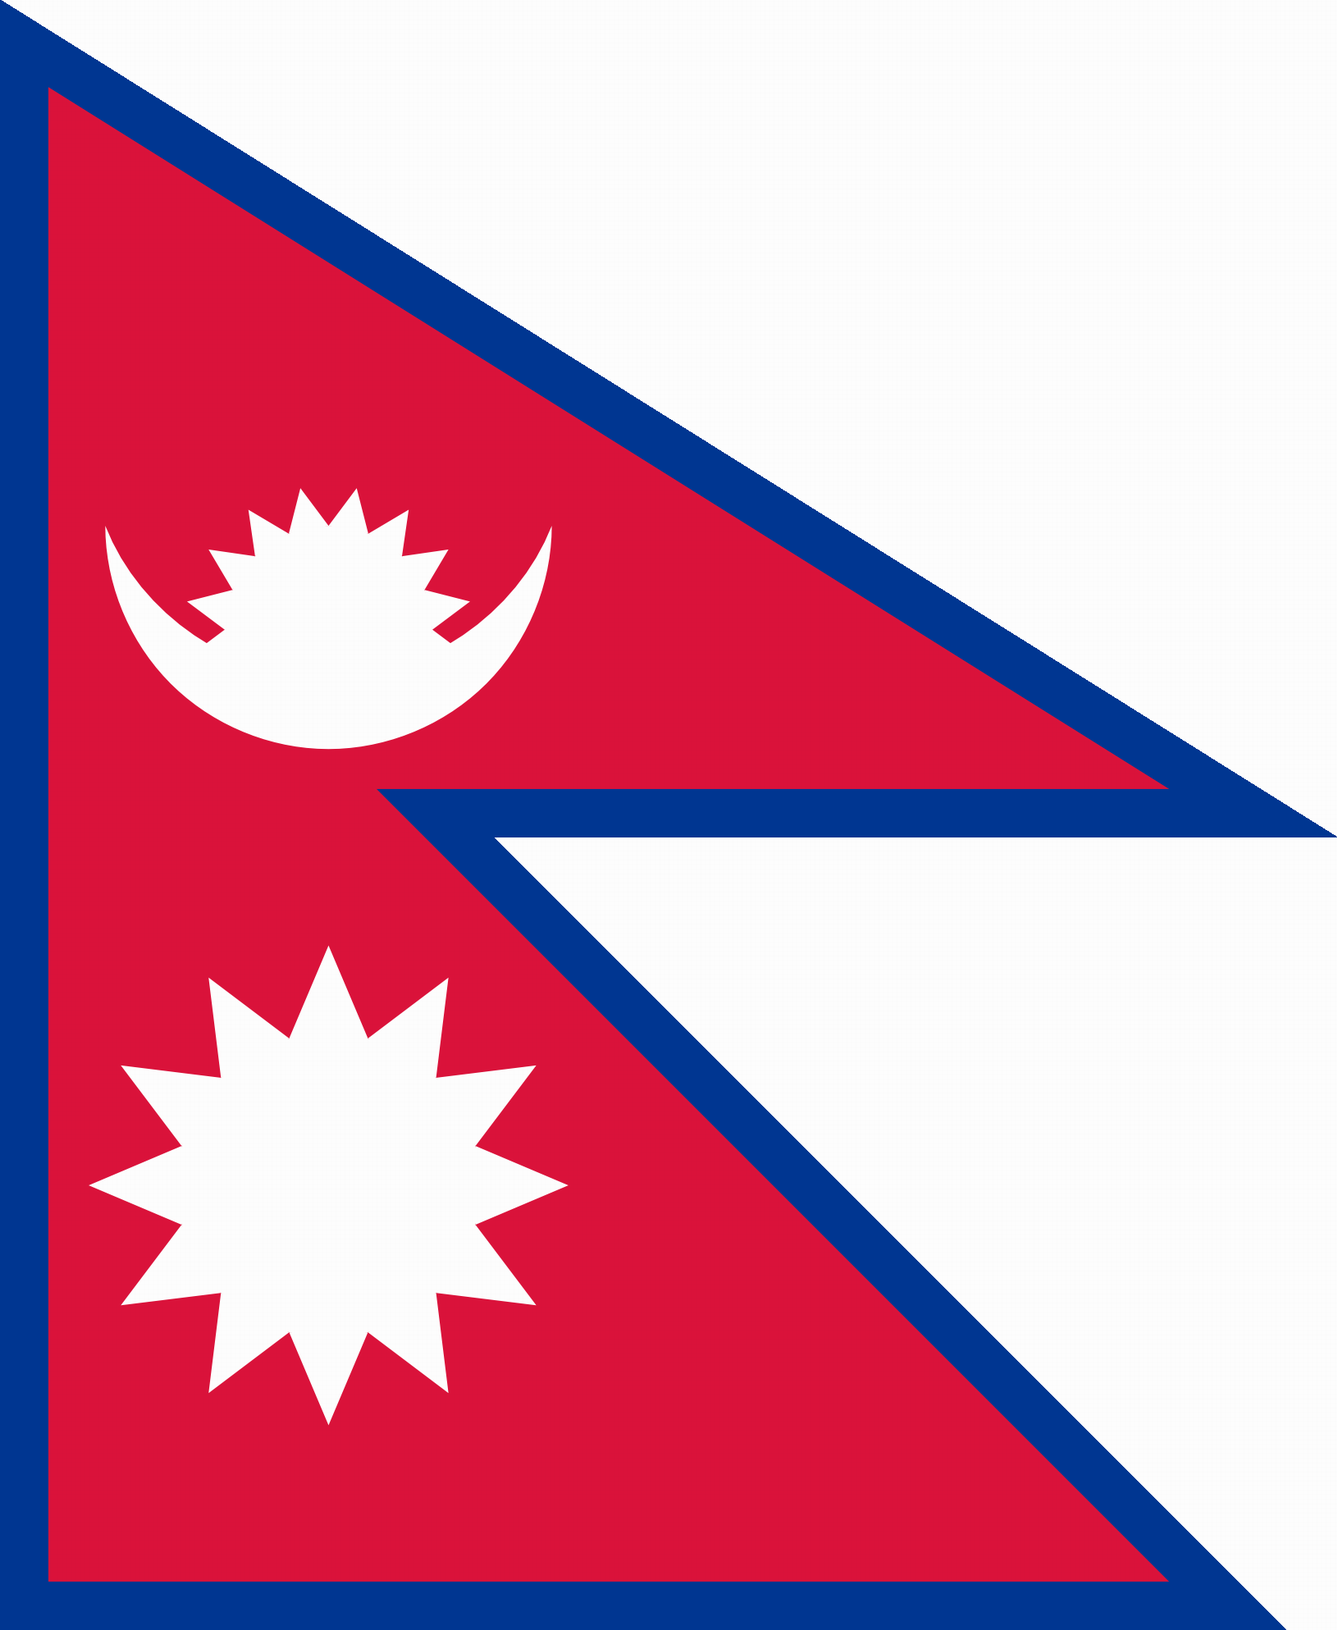 Podoba nacionalno zastavo države Nepal v resoluciji 1337x1630